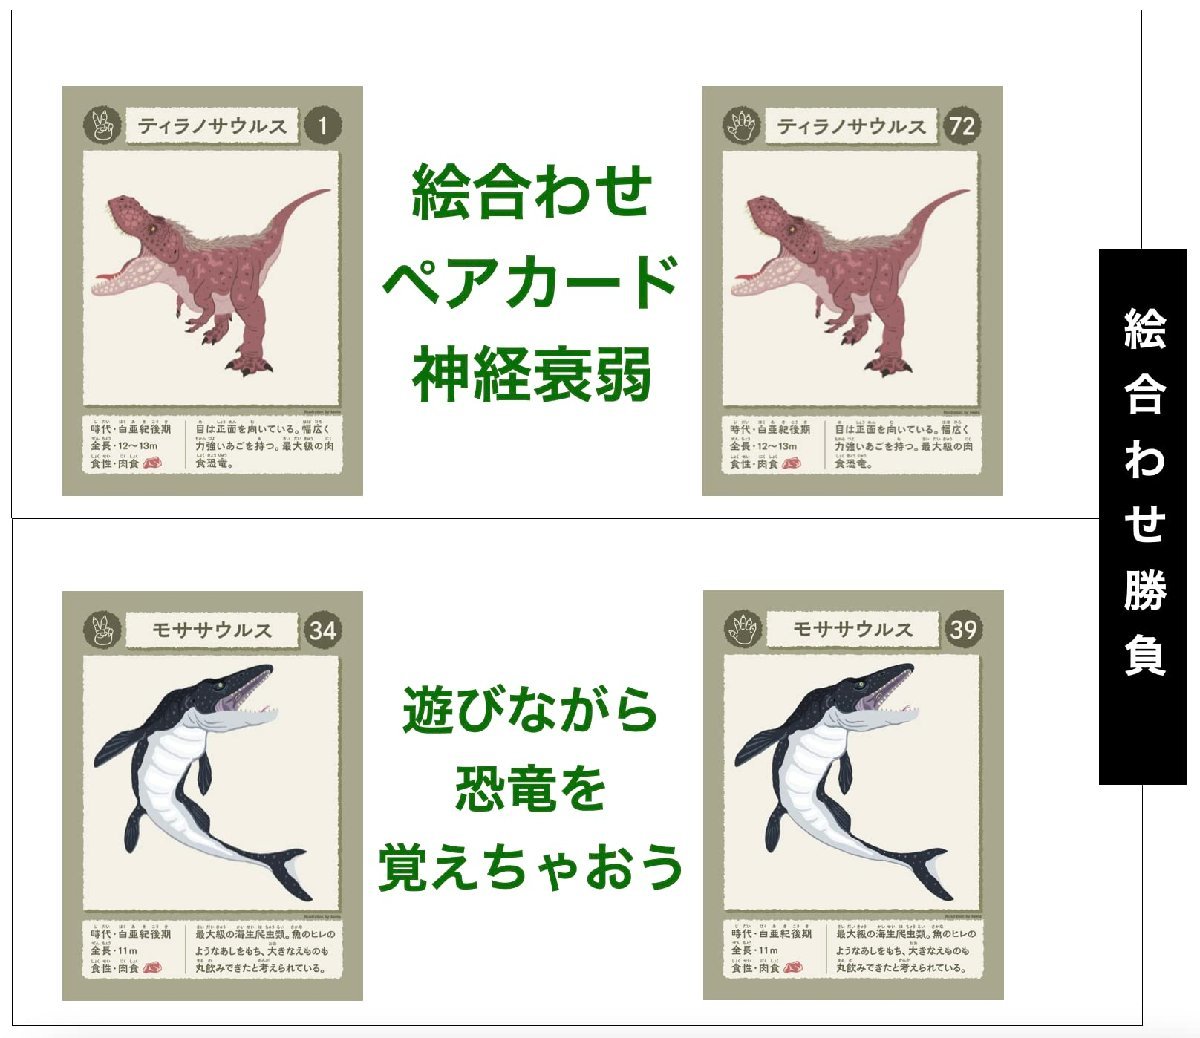  бесплатная доставка * ребенок карты ( динозавр пара карта * нерв . слабый )